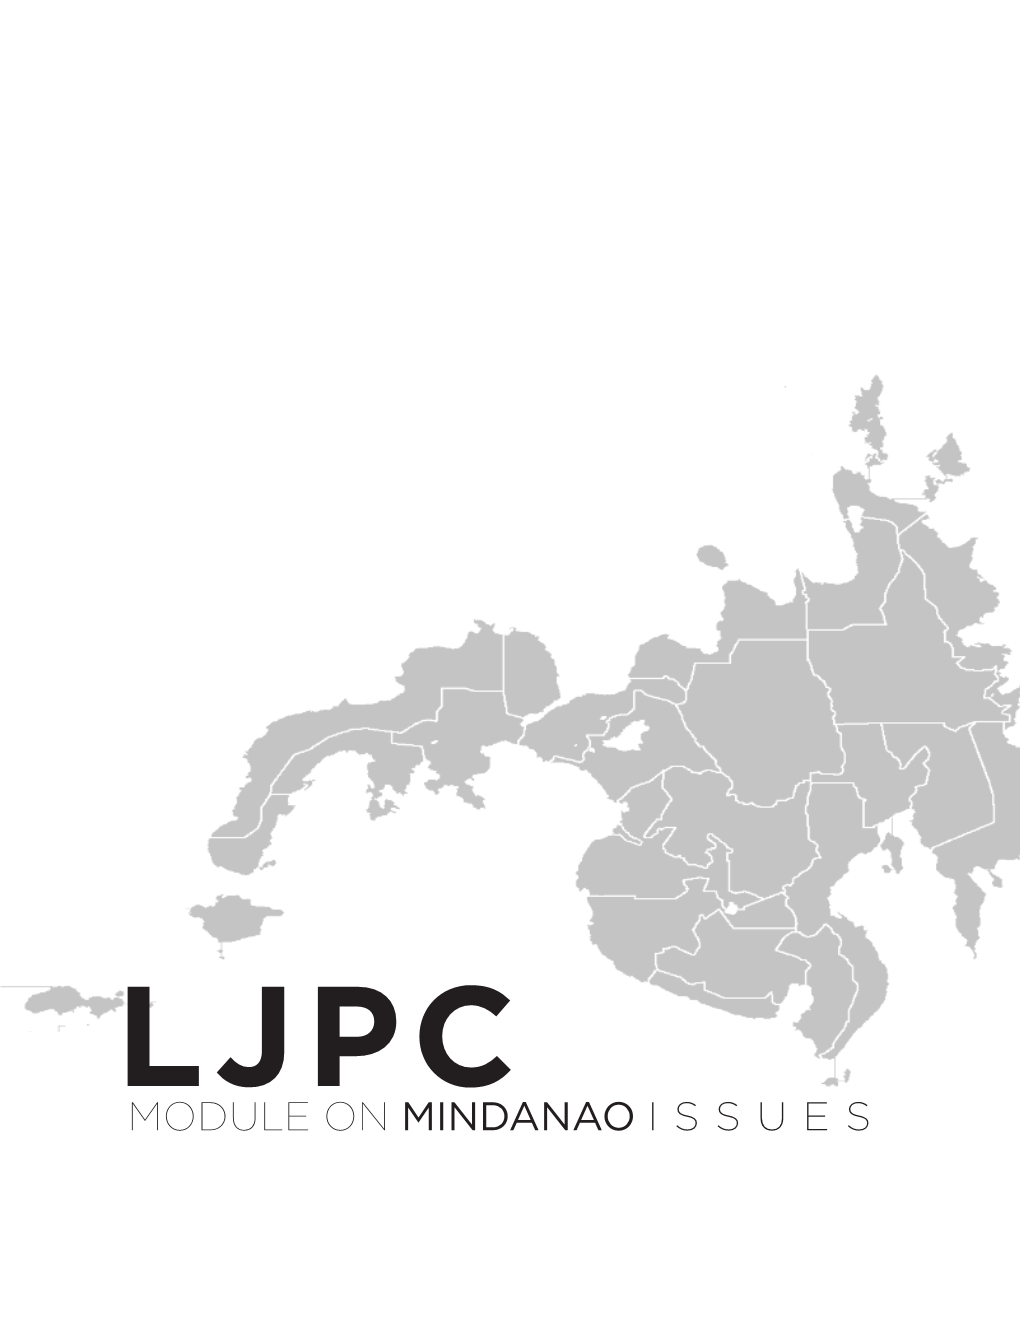 Module on Mindanao Issues